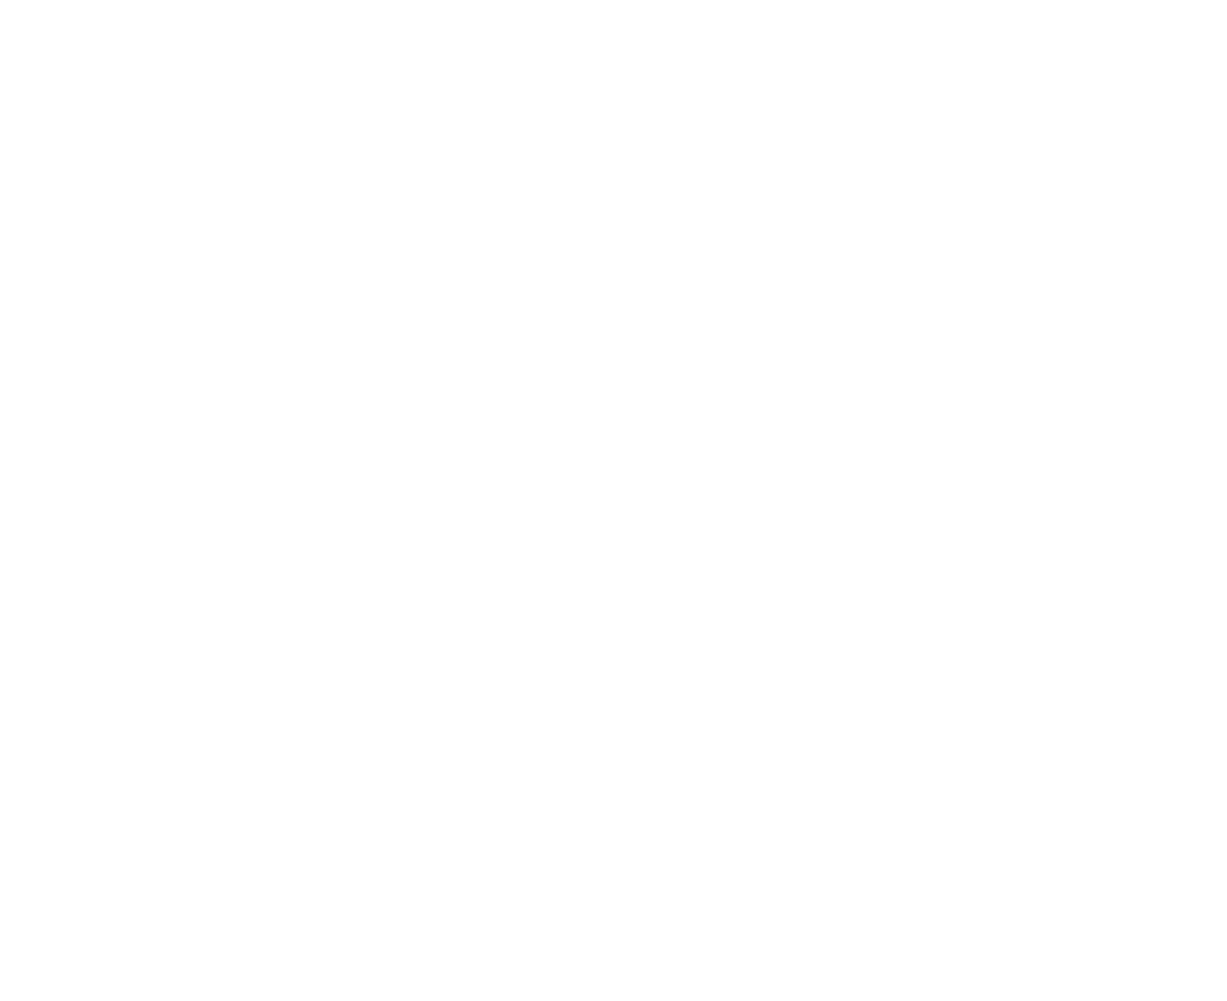 Sächsische Stiftung für Medienausbildung